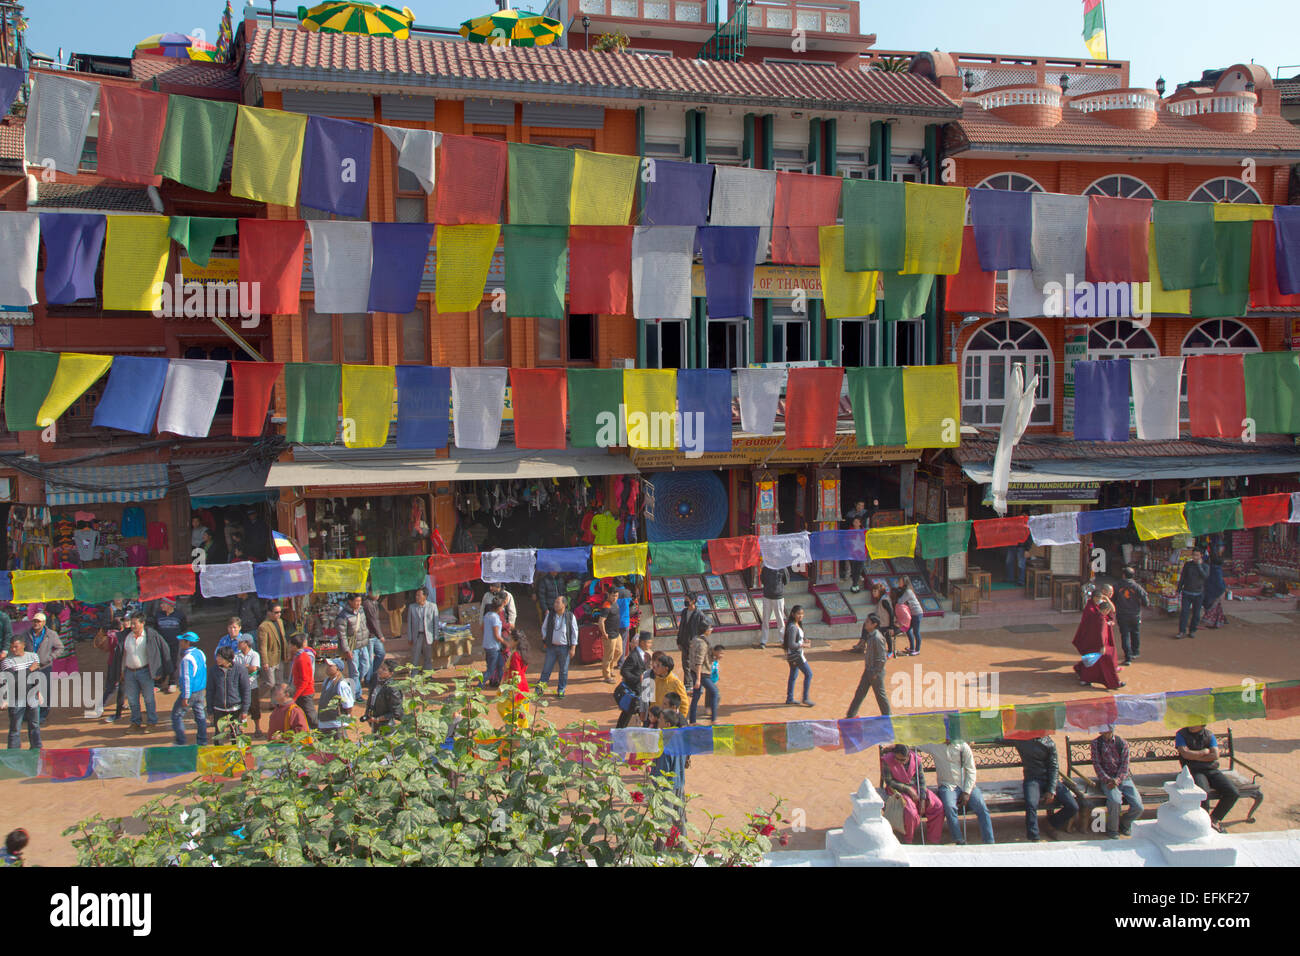 Geschäfte rund um die größte Stupa in Nepal Durbar Square Kathmandu Bodnath Stockfoto